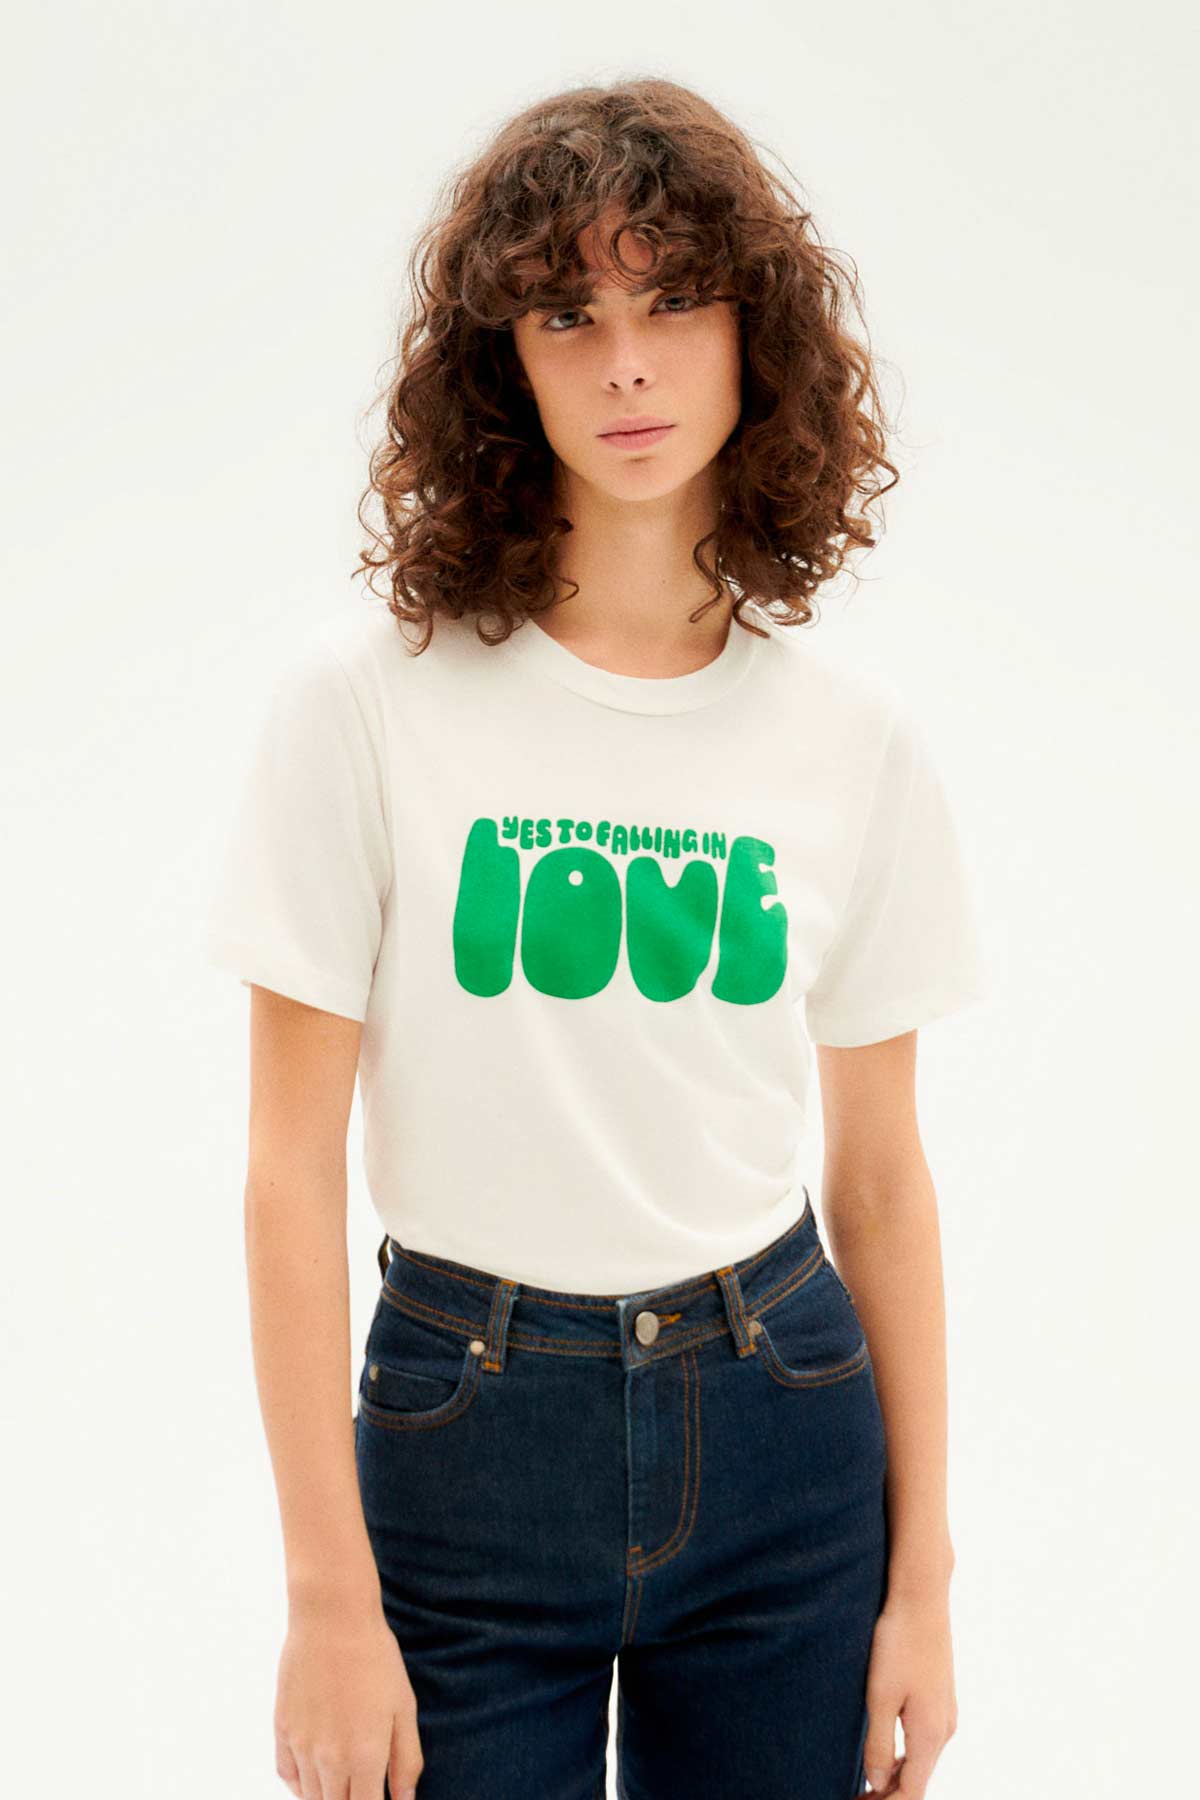 T-Shirt Yes Love - Thinking Mu